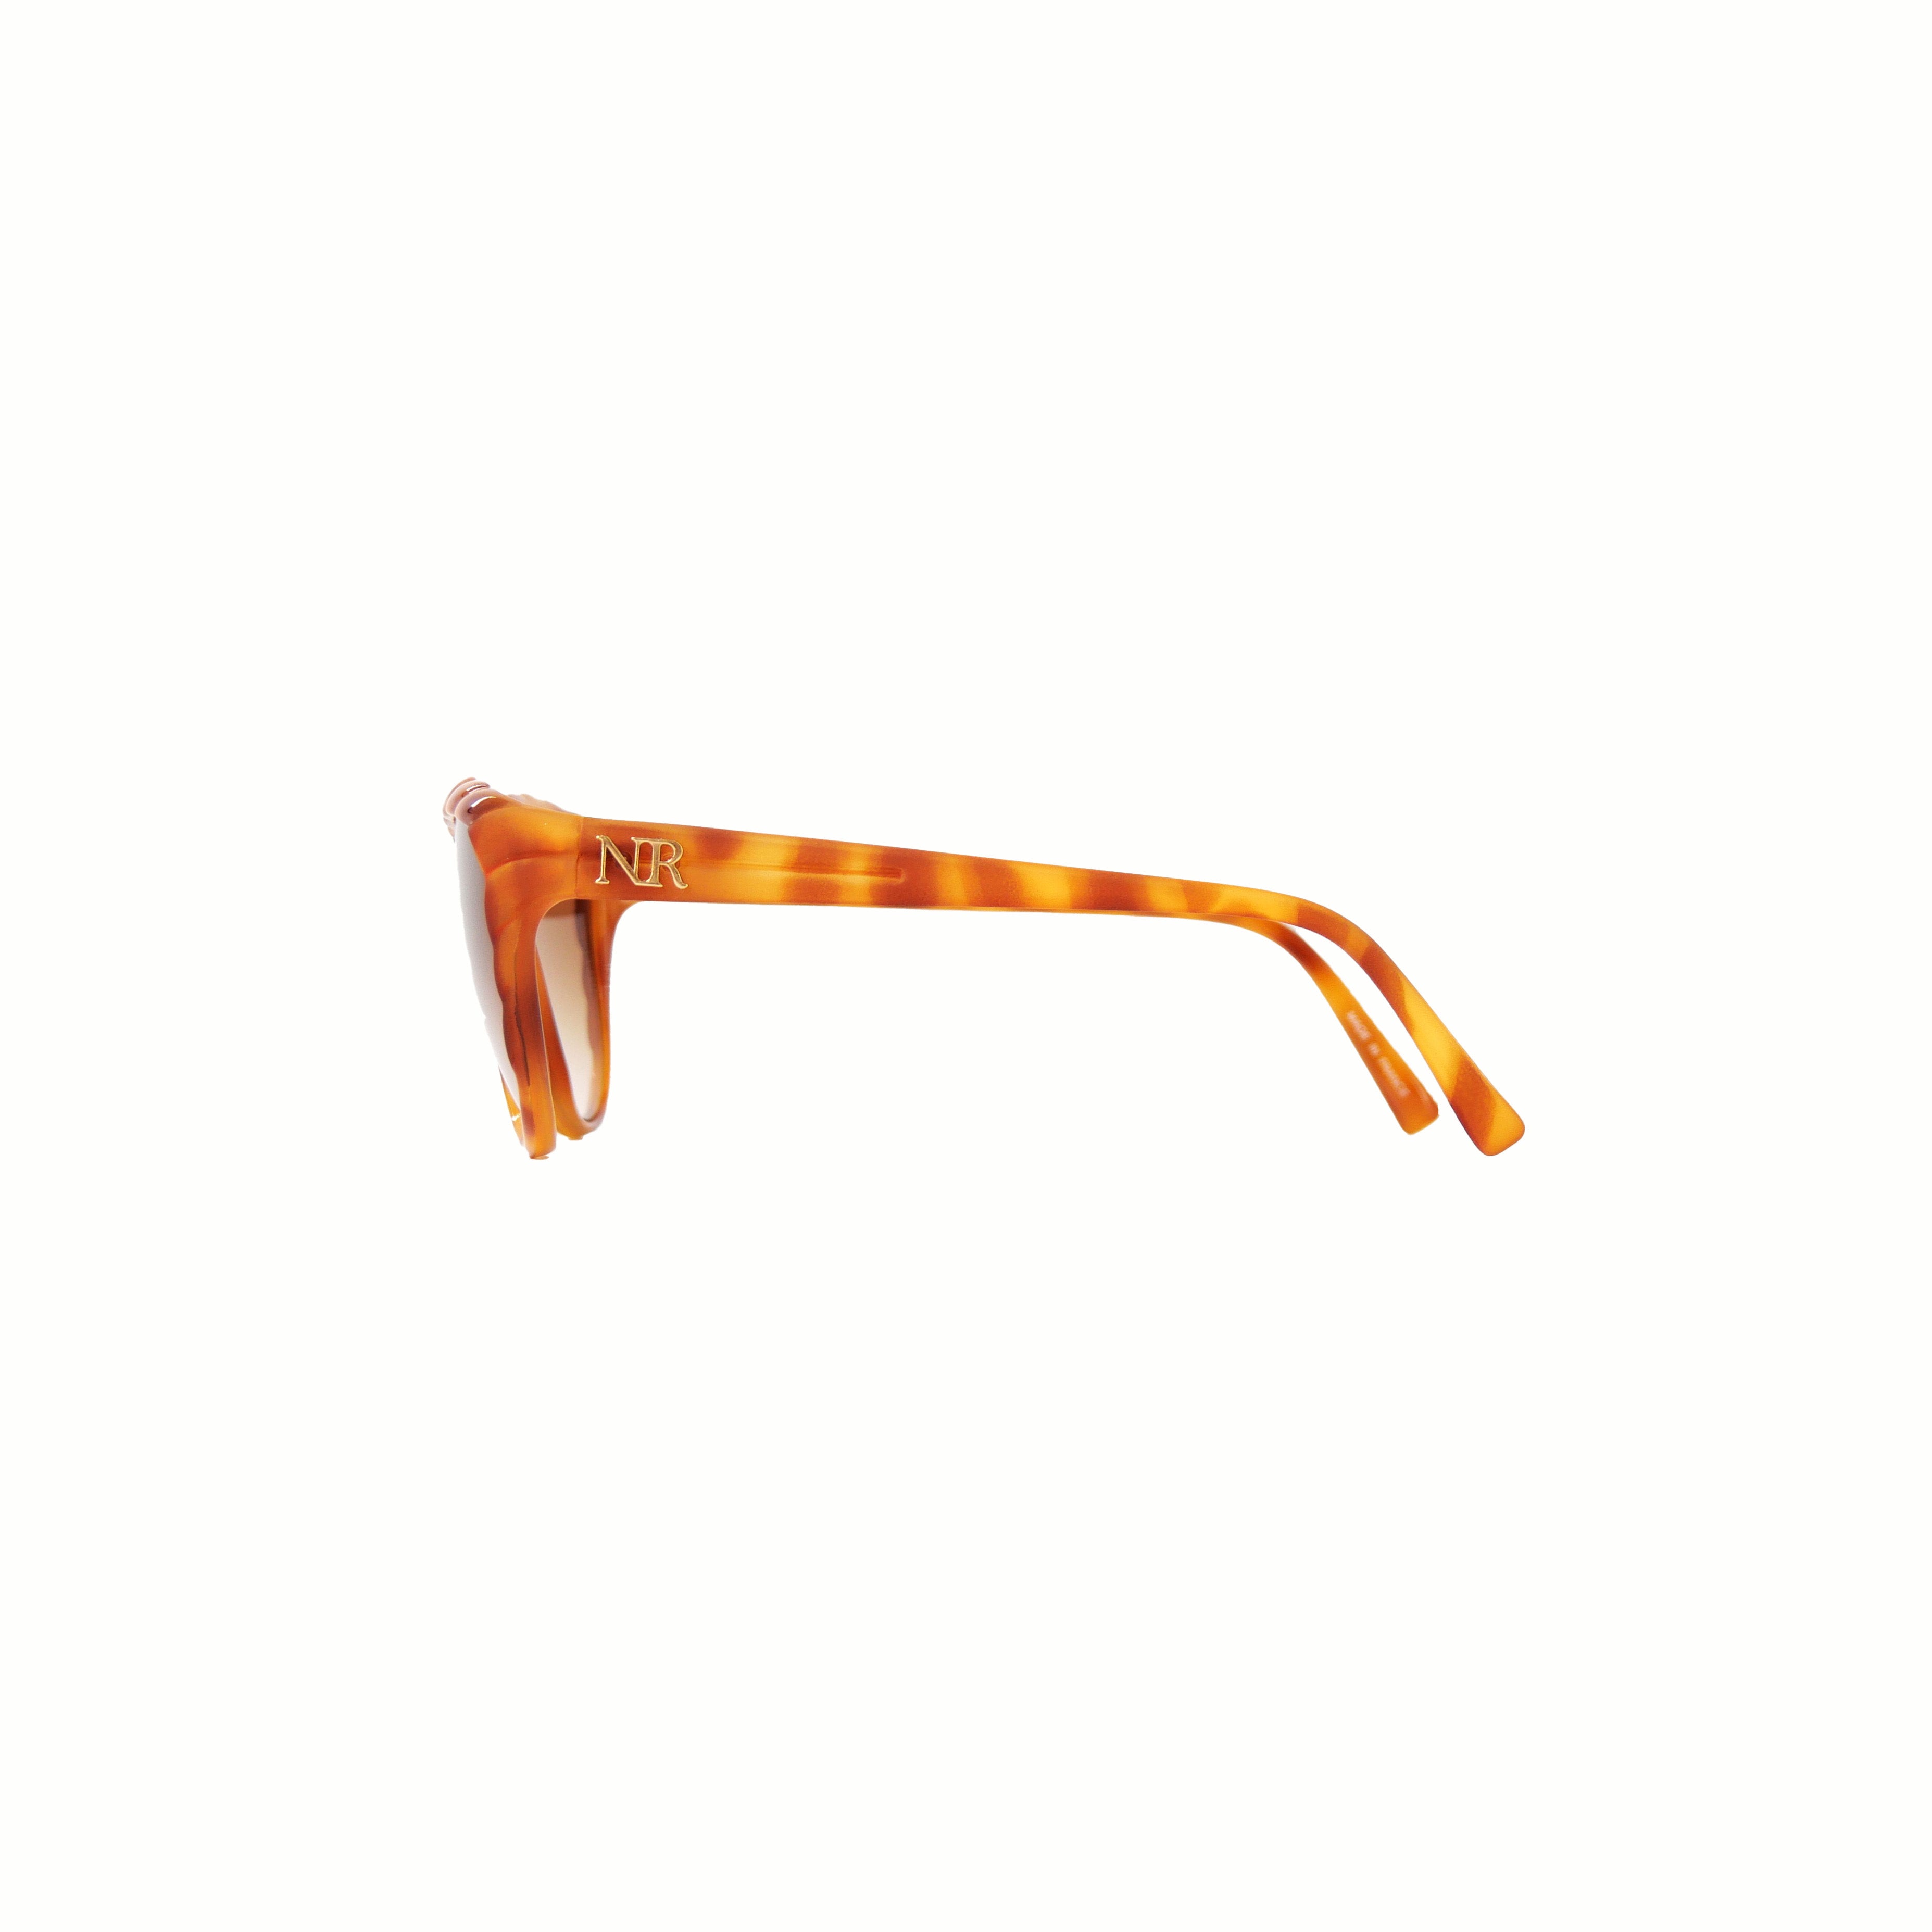 Retro Sun[レトロ サン] / NINA RICCI Sunglasses② [ニナ リッチ サングラス]